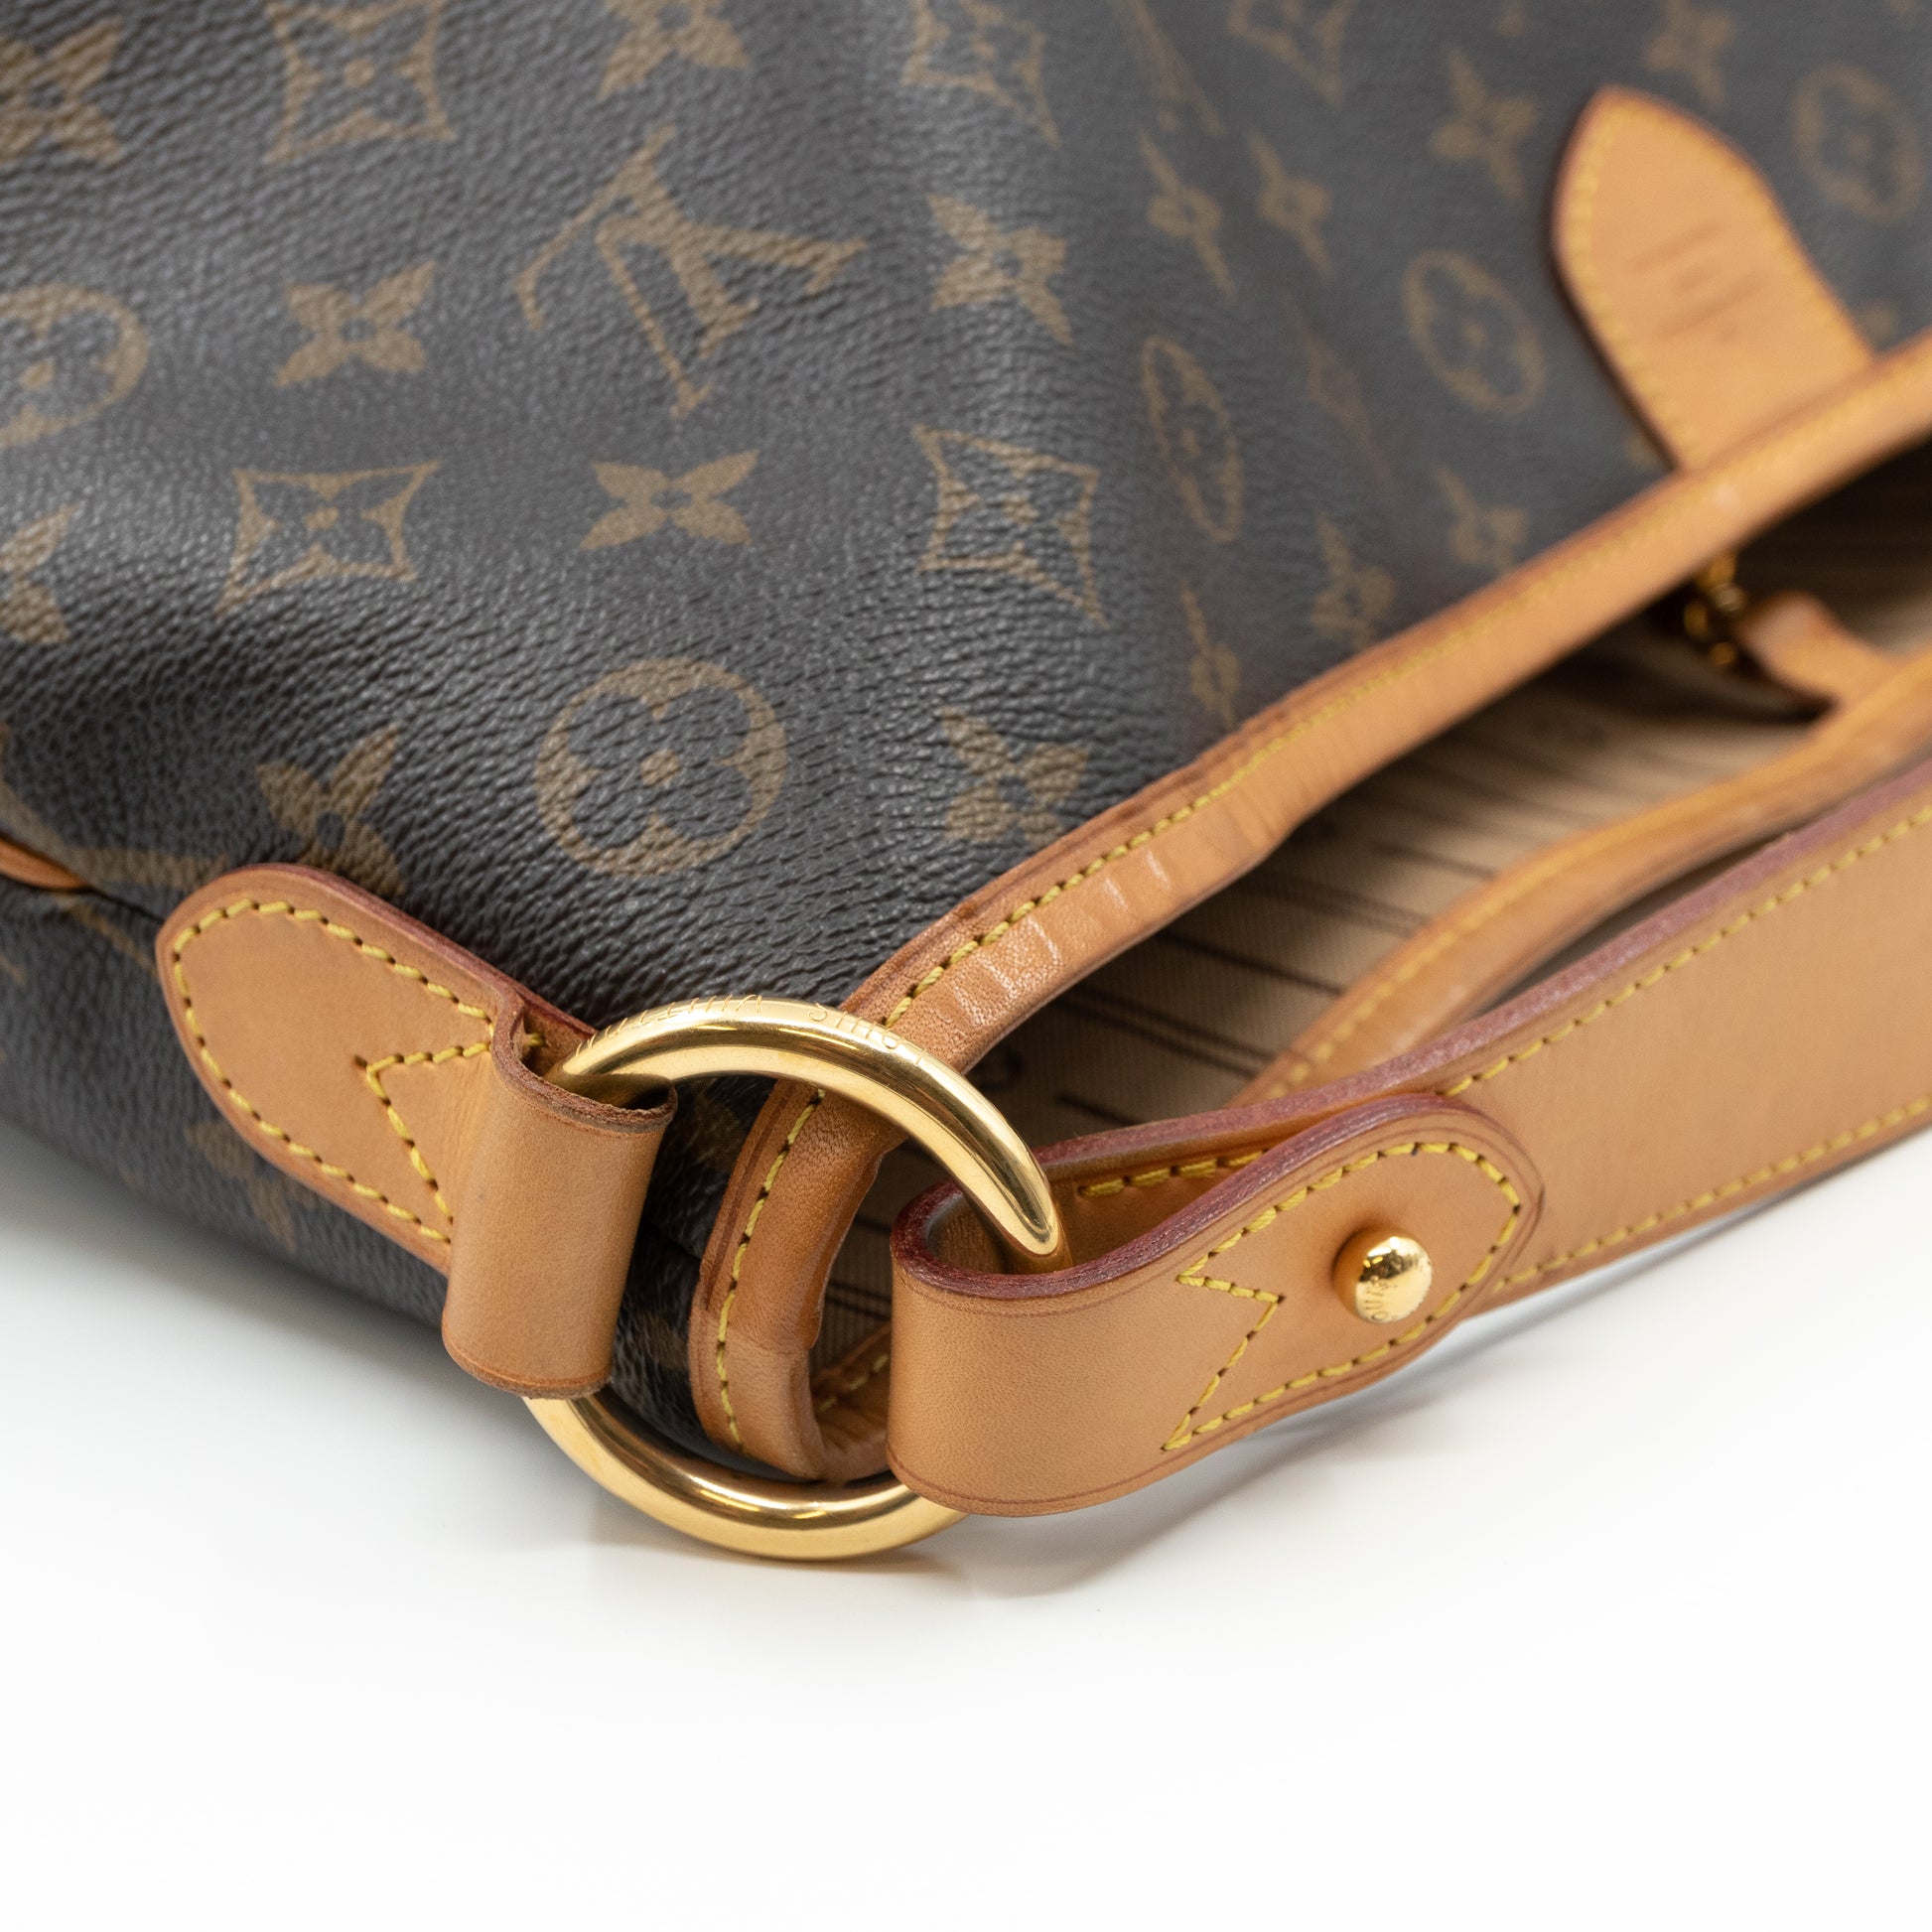 Louis Vuitton Delightful MM Monogram Canvas Shoulder Bag